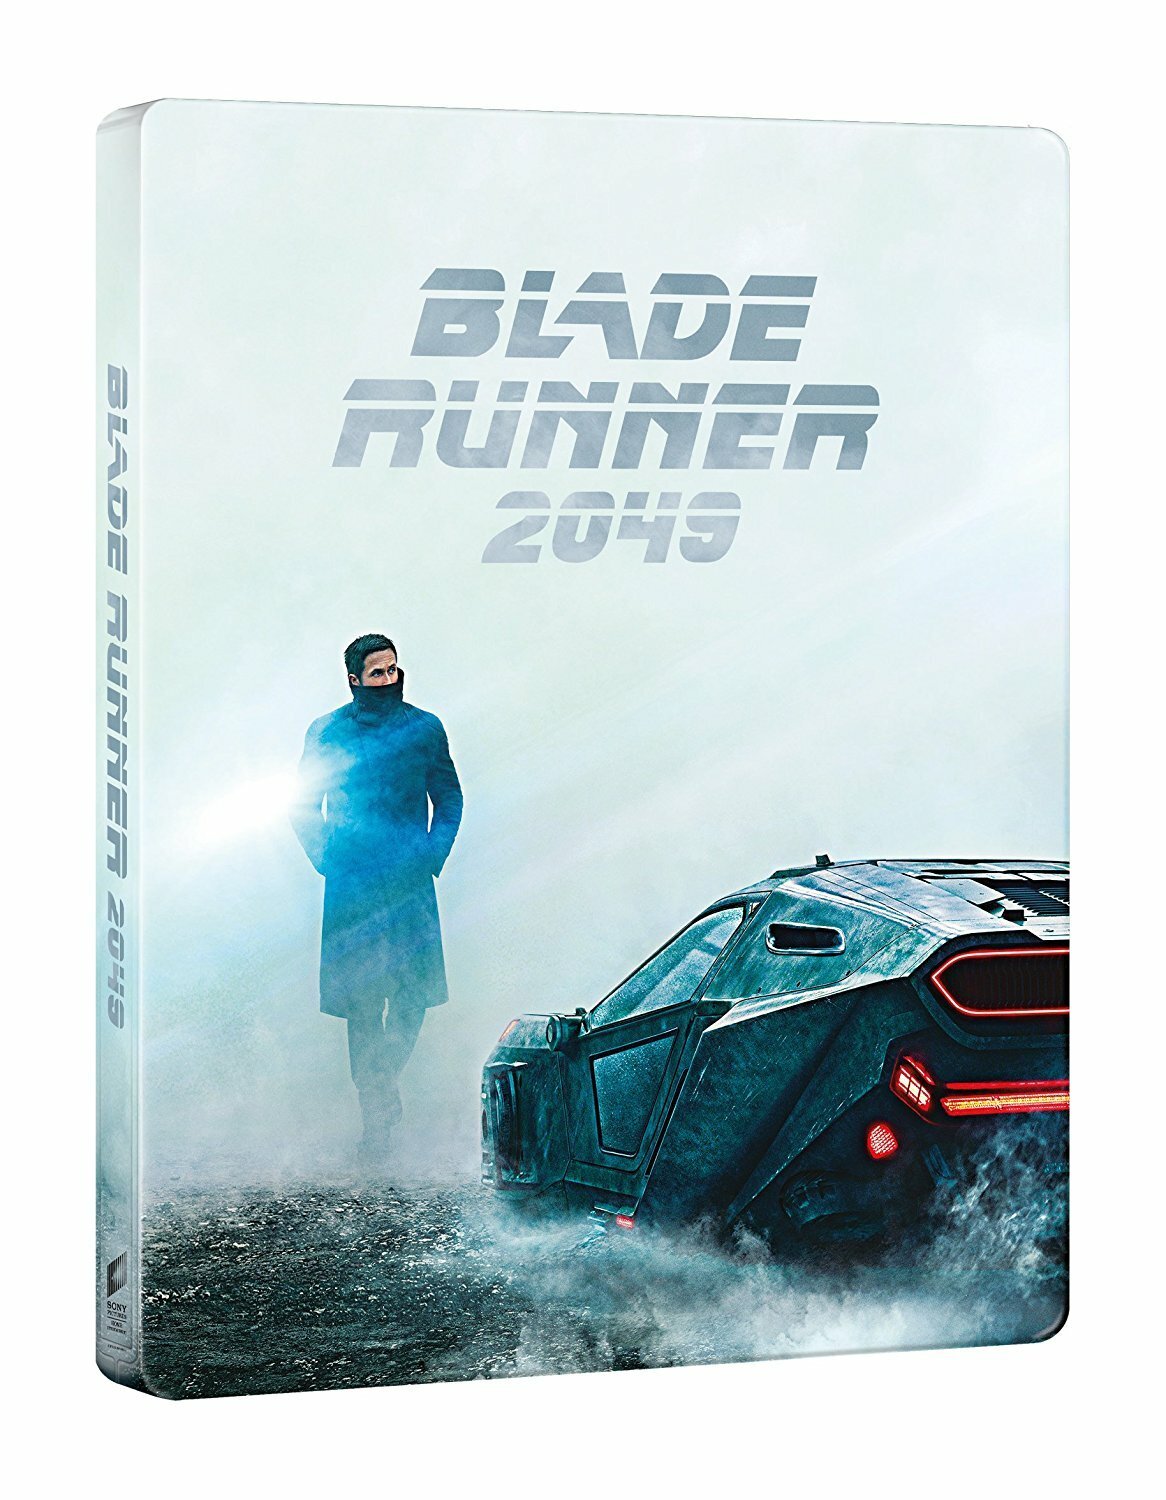 Packshot frontale di Blade Runner 2049 in edizione Steelbook